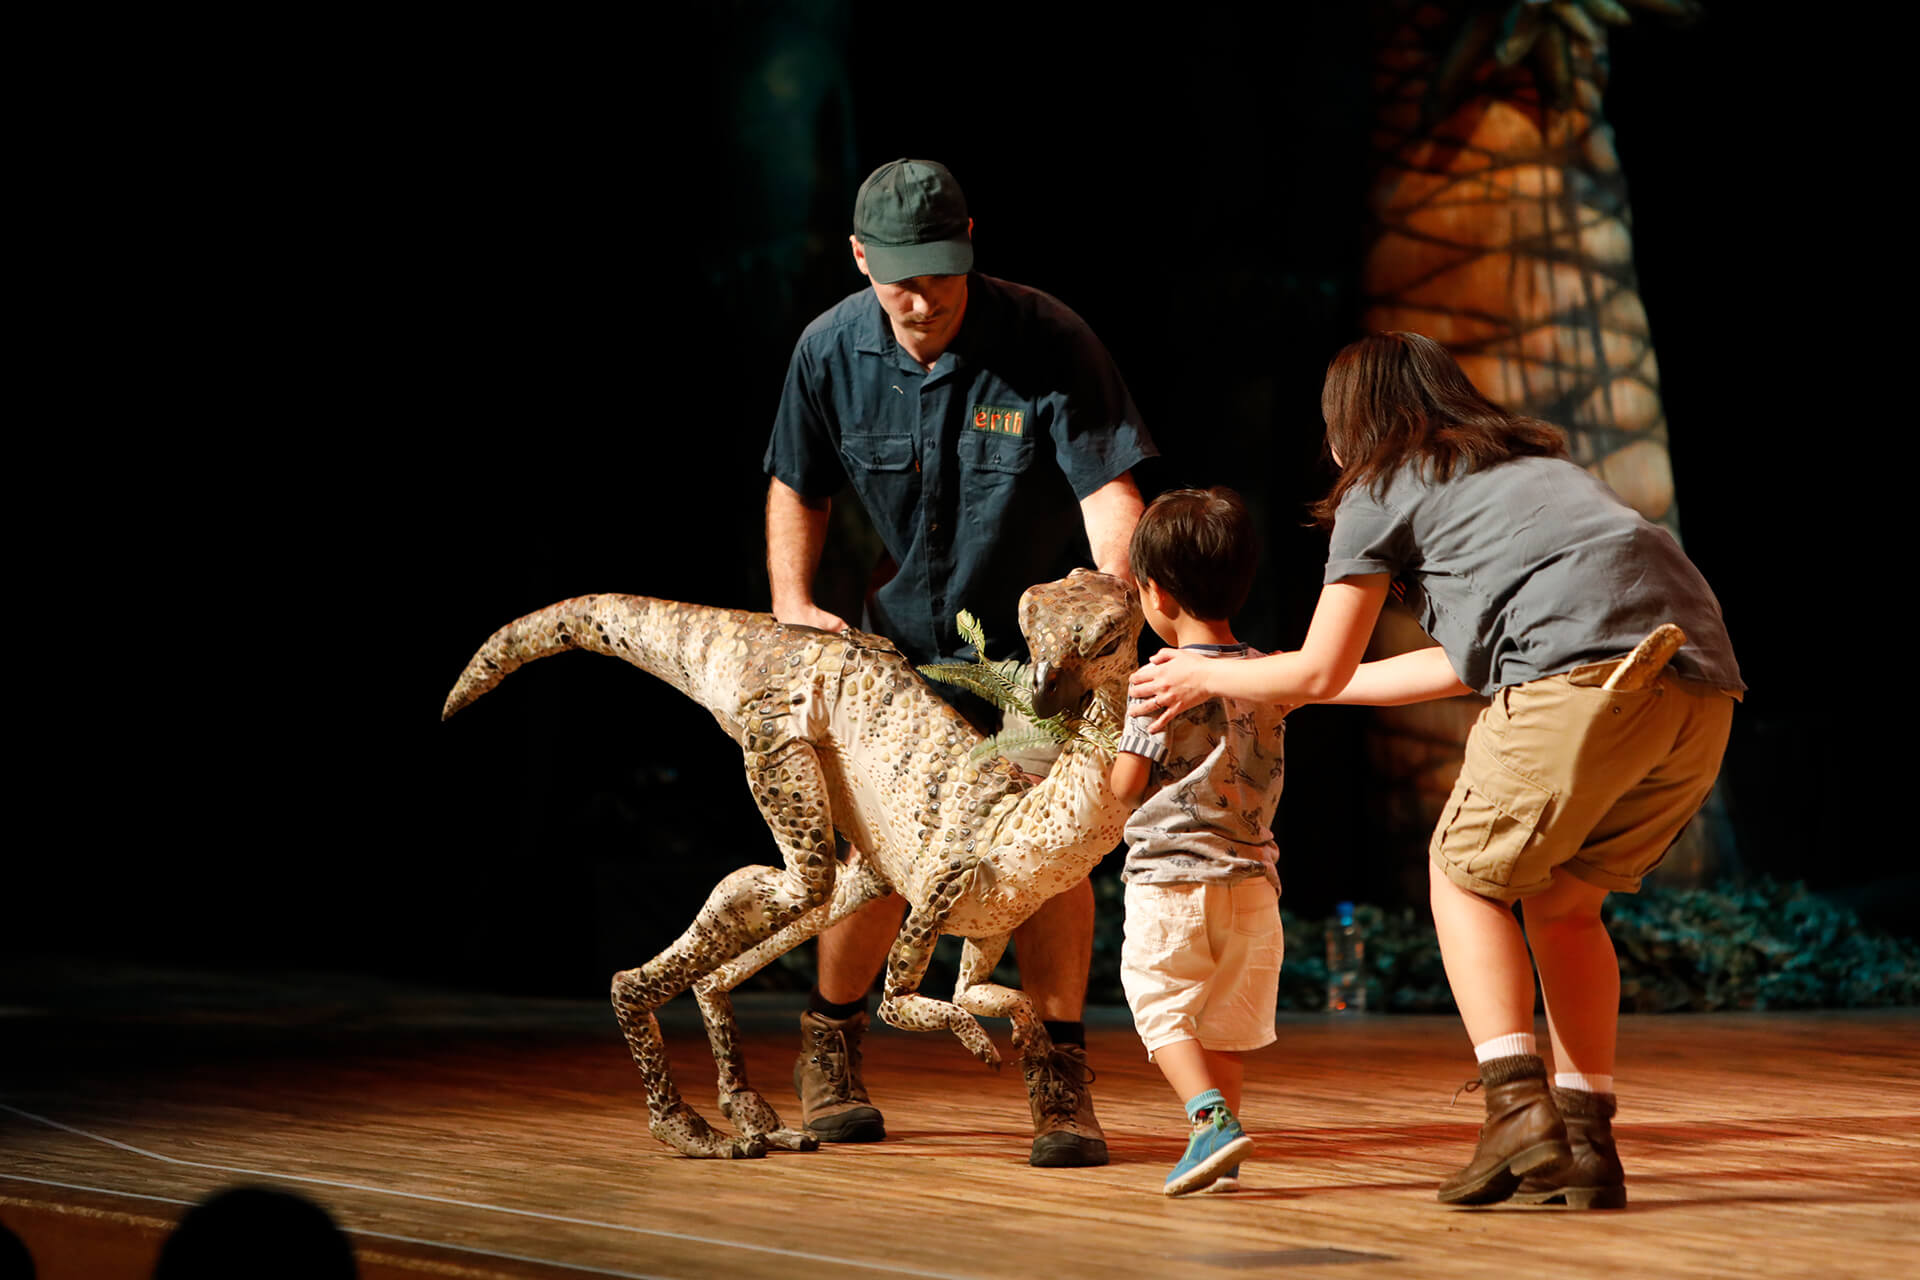 この写真は装飾恐竜と戯れる子供です